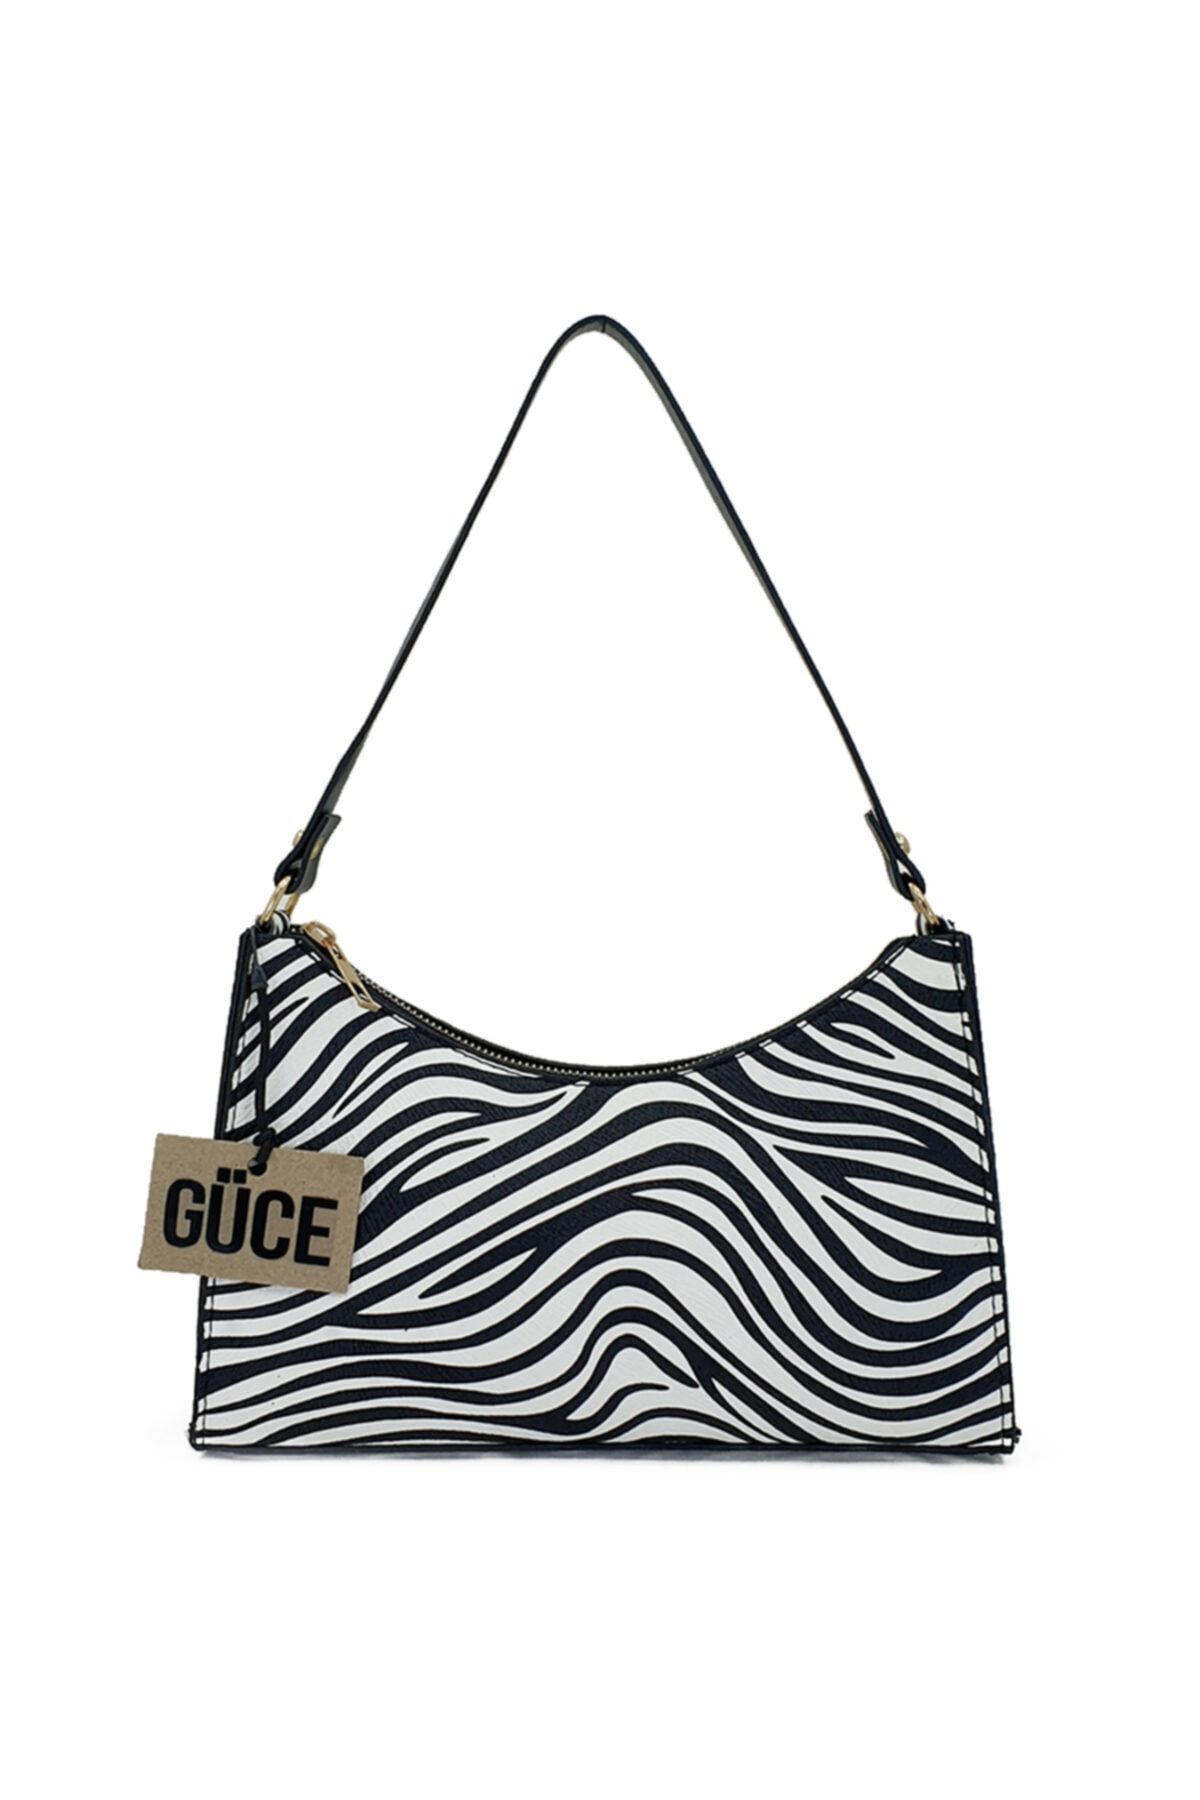 Güce Siyah Beyaz Küçük Zebra Desenli Baget Baguette El Ve Omuz Çantası Gc0090zebra